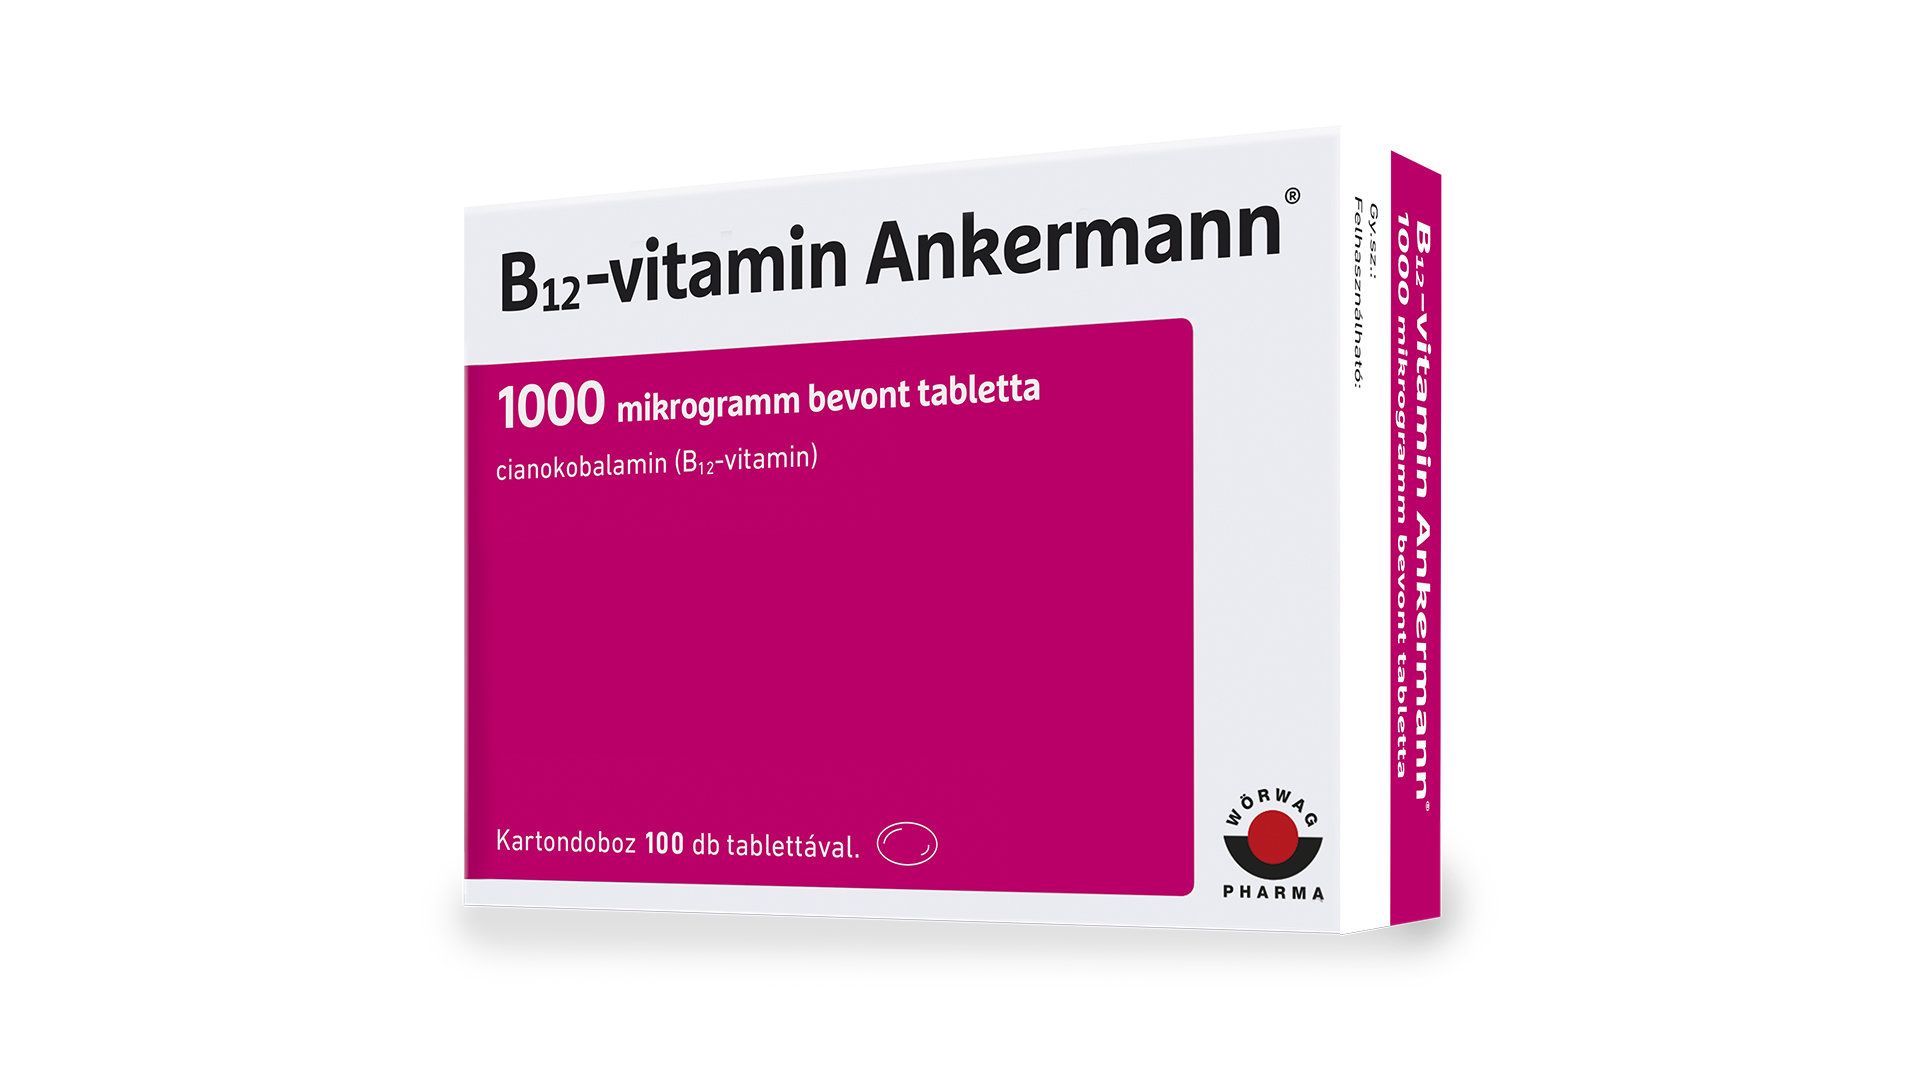 Multivitamine si minerale - Vitamina B12 Ankermann 1000mcg x 50 drajeuri, medik-on.ro